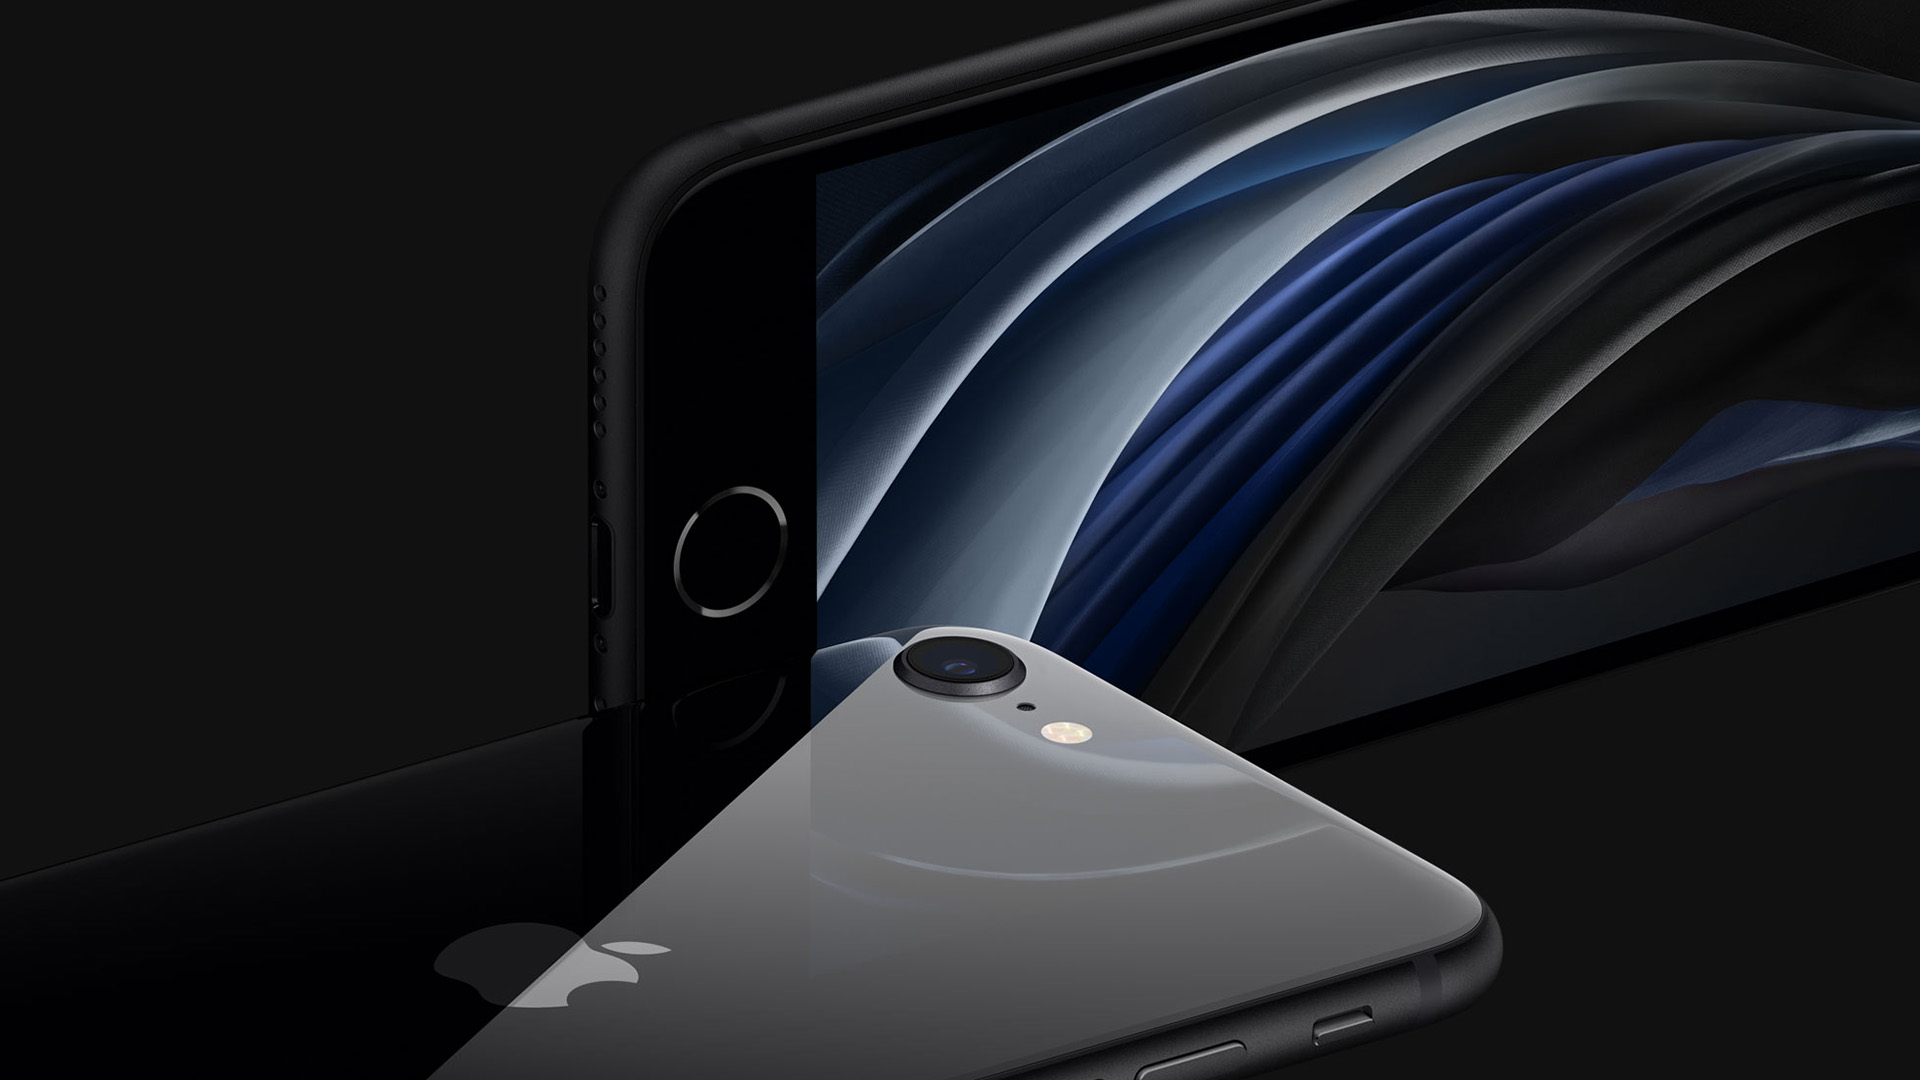 Appleдизайн iPhone SE 3, возможно, раскрыт в этой новой утечке